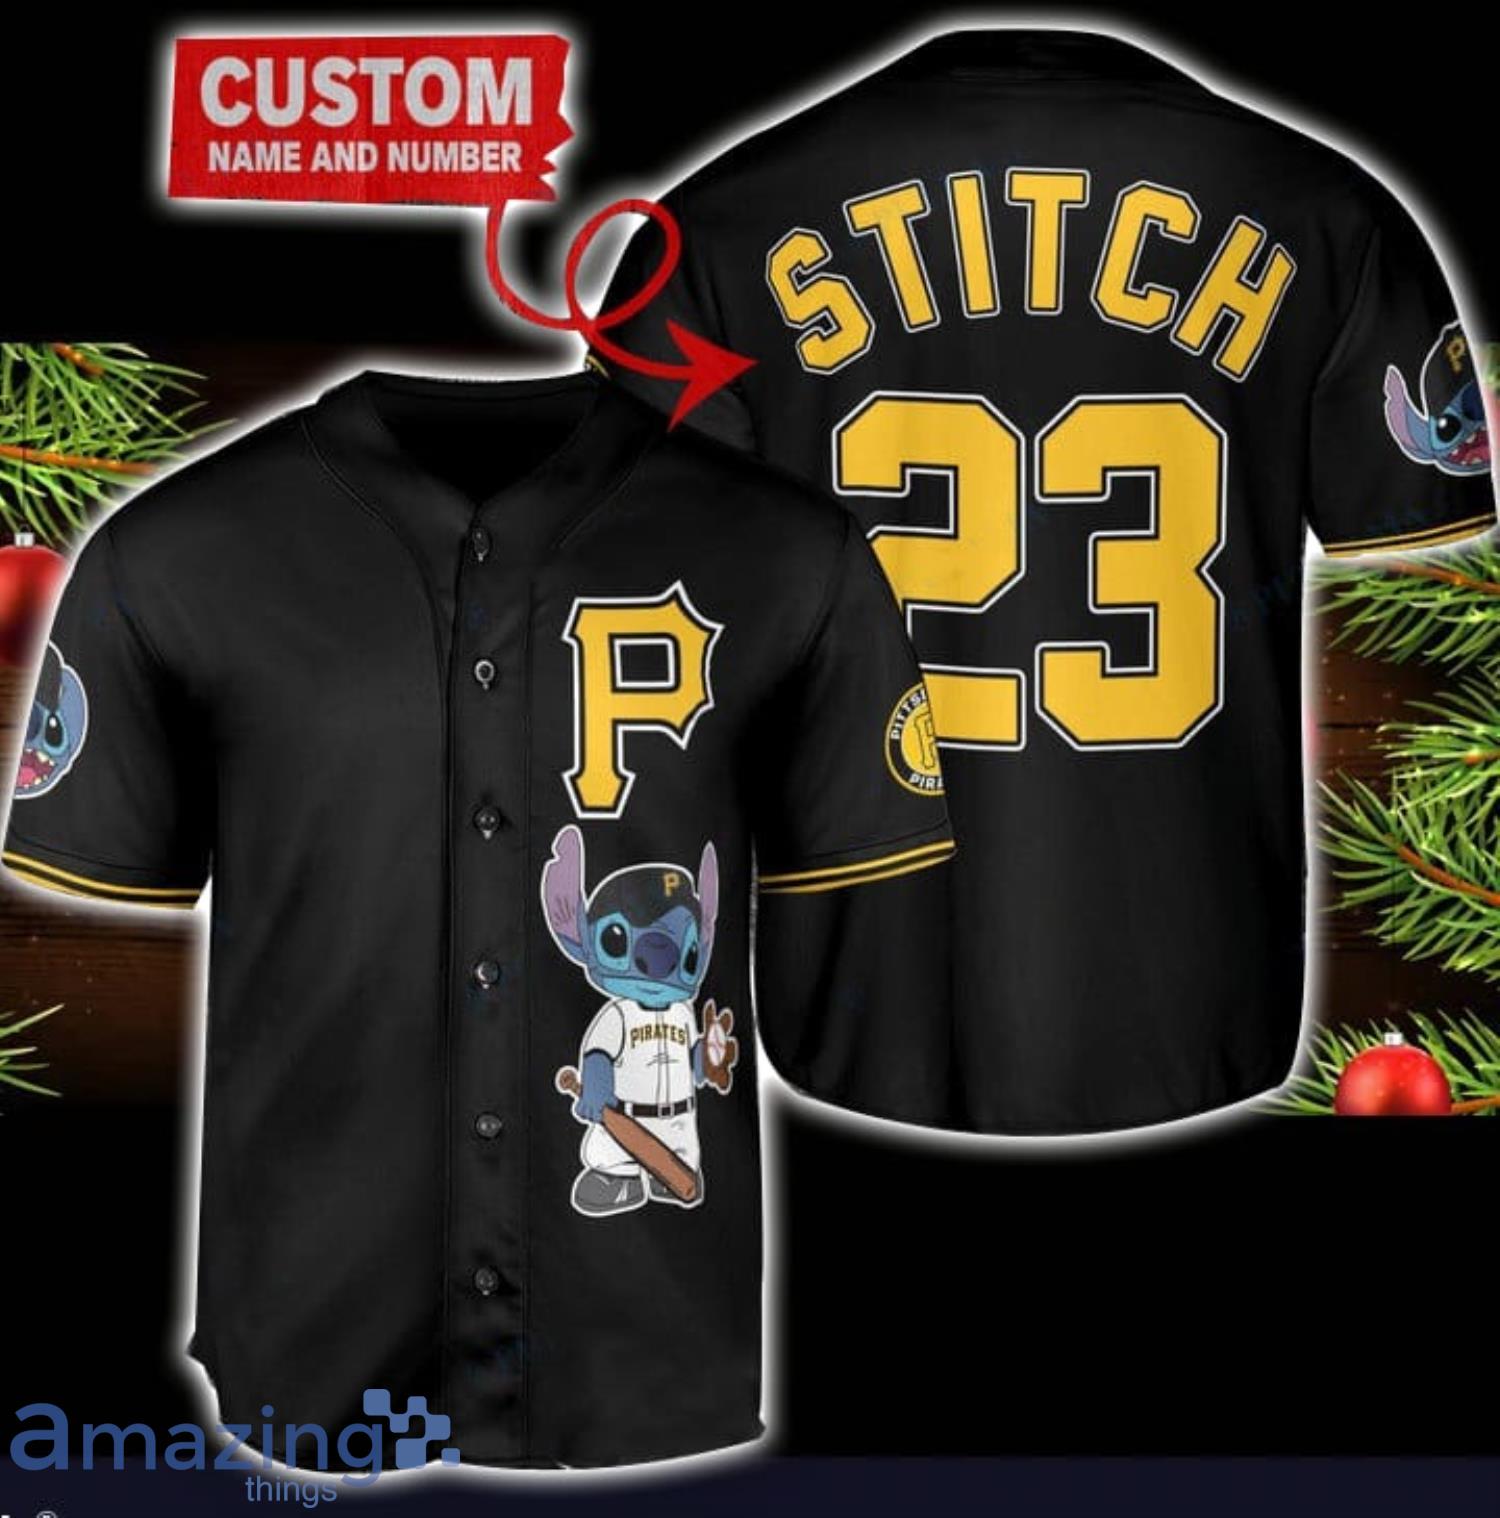 Pittsburgh Pirates Personalized Name MLB Fans Stitch Baseball Jersey Shirt  Black